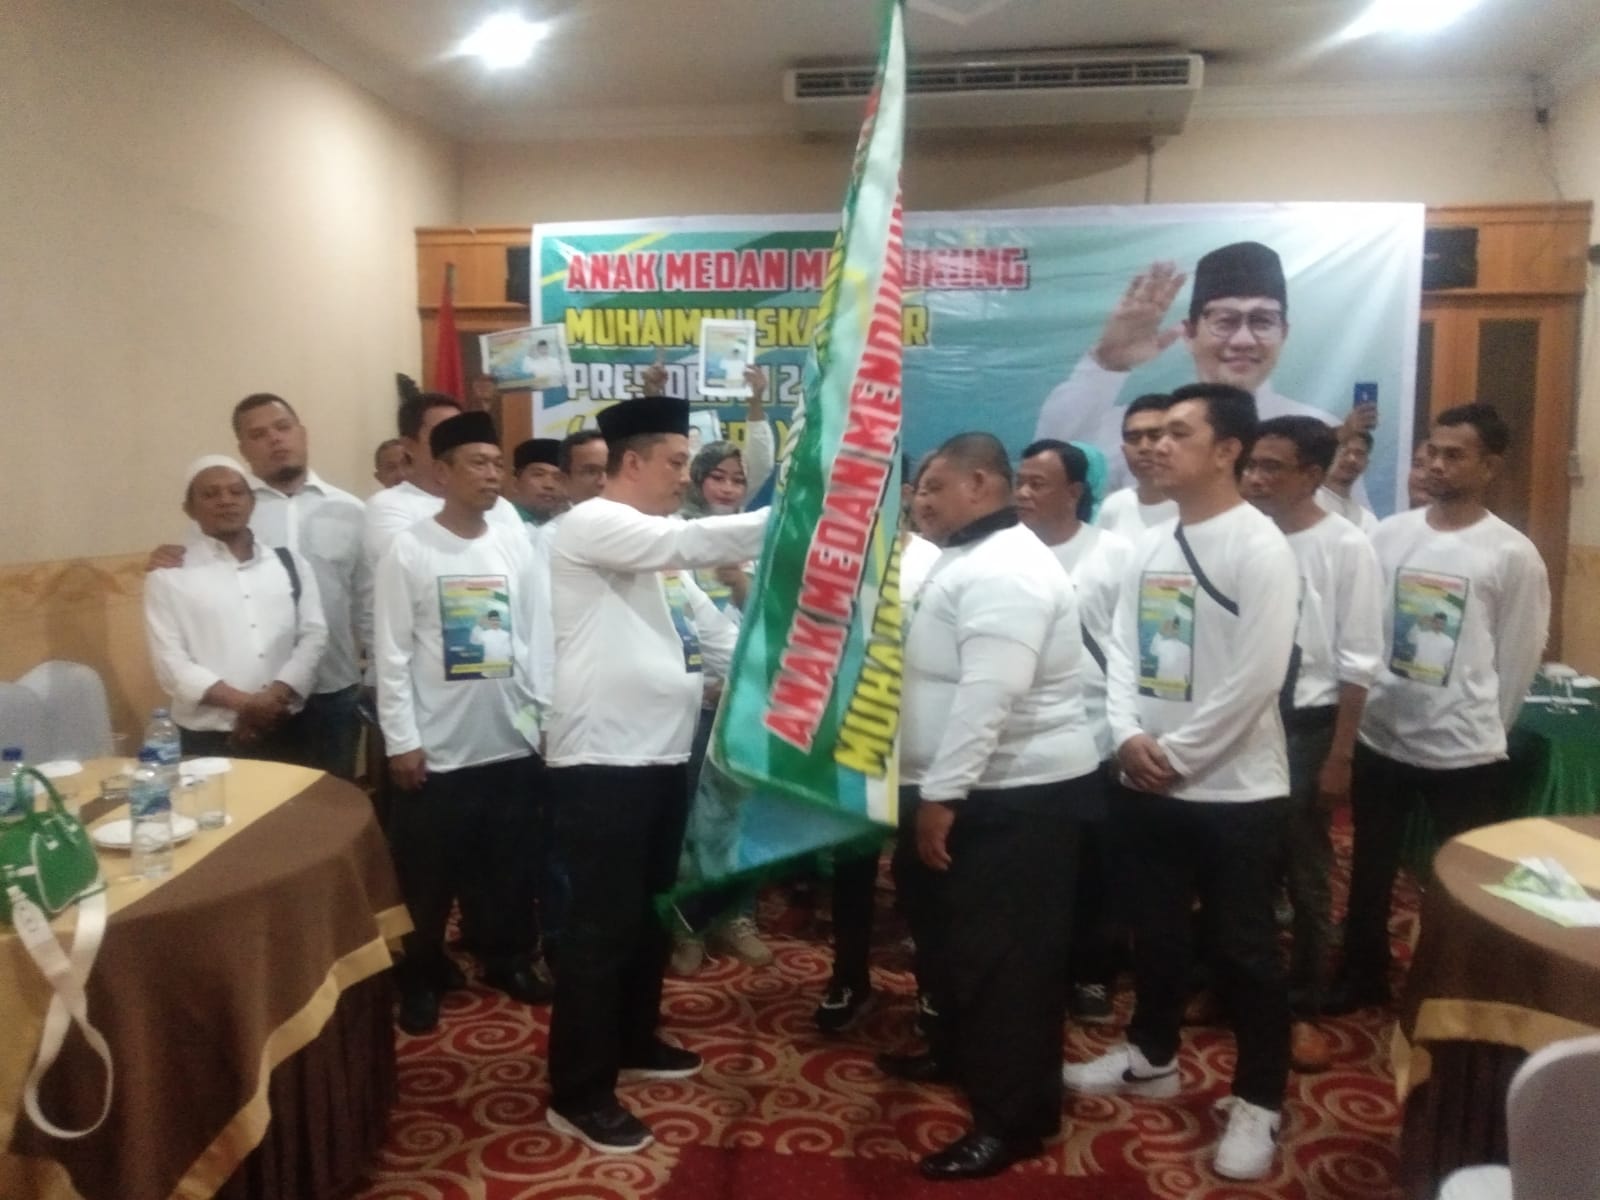 Anak Medan Deklarasikan Relawan Muhaimin Iskandar Presiden RI 2024